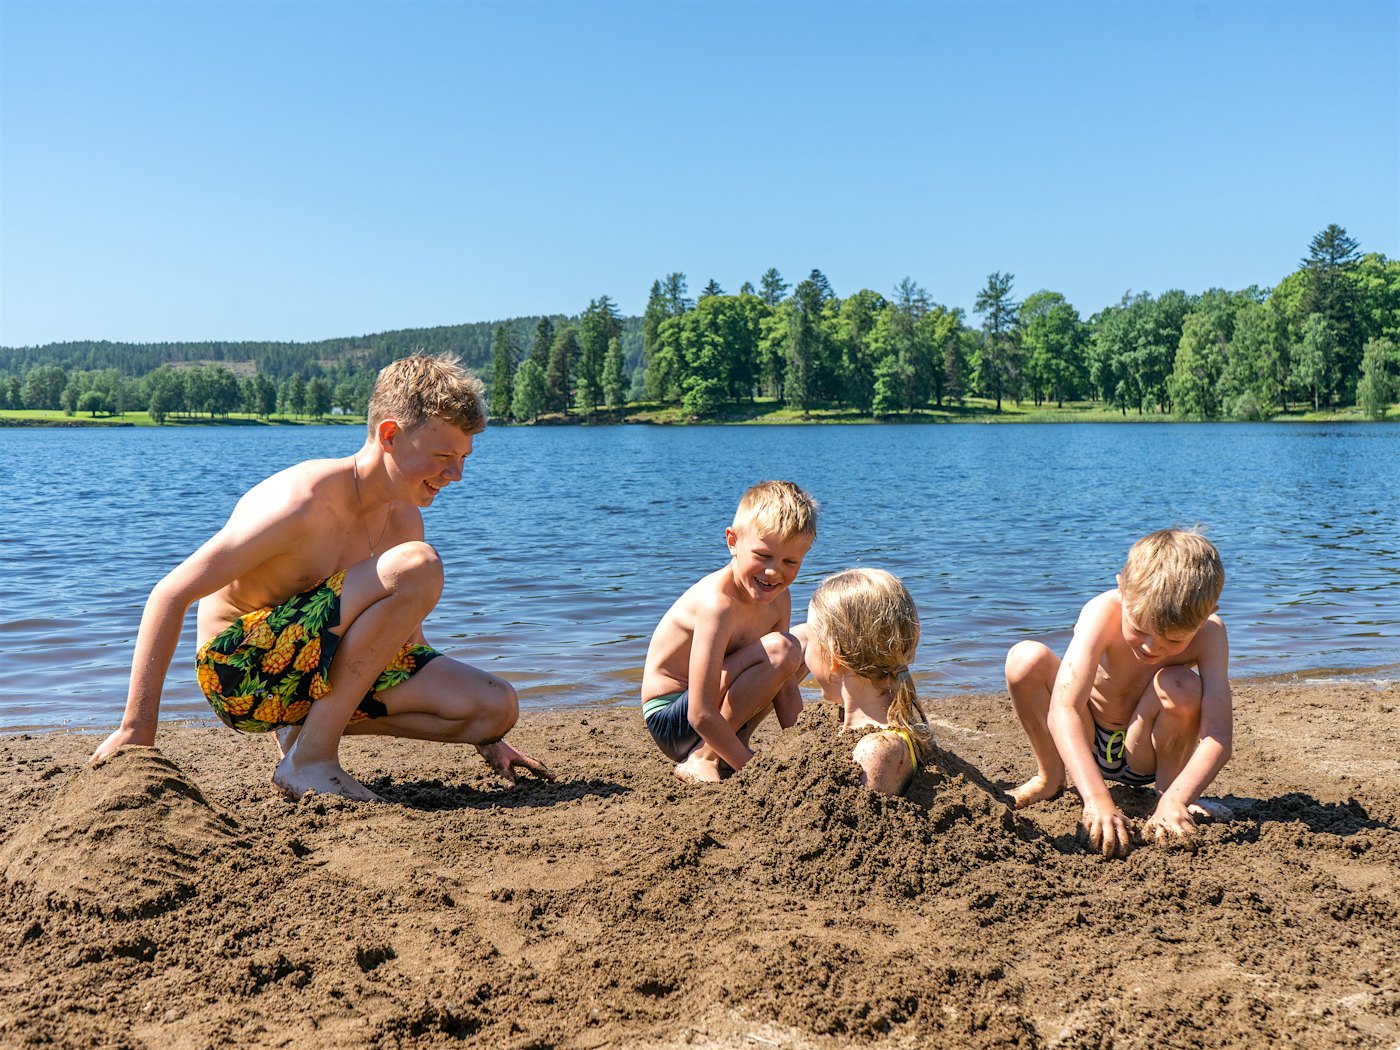 Far og to gutter graver ned jente i stranda. Hodet til jenten stikker opp. I bakgrunnen ser man blått vann og skog.